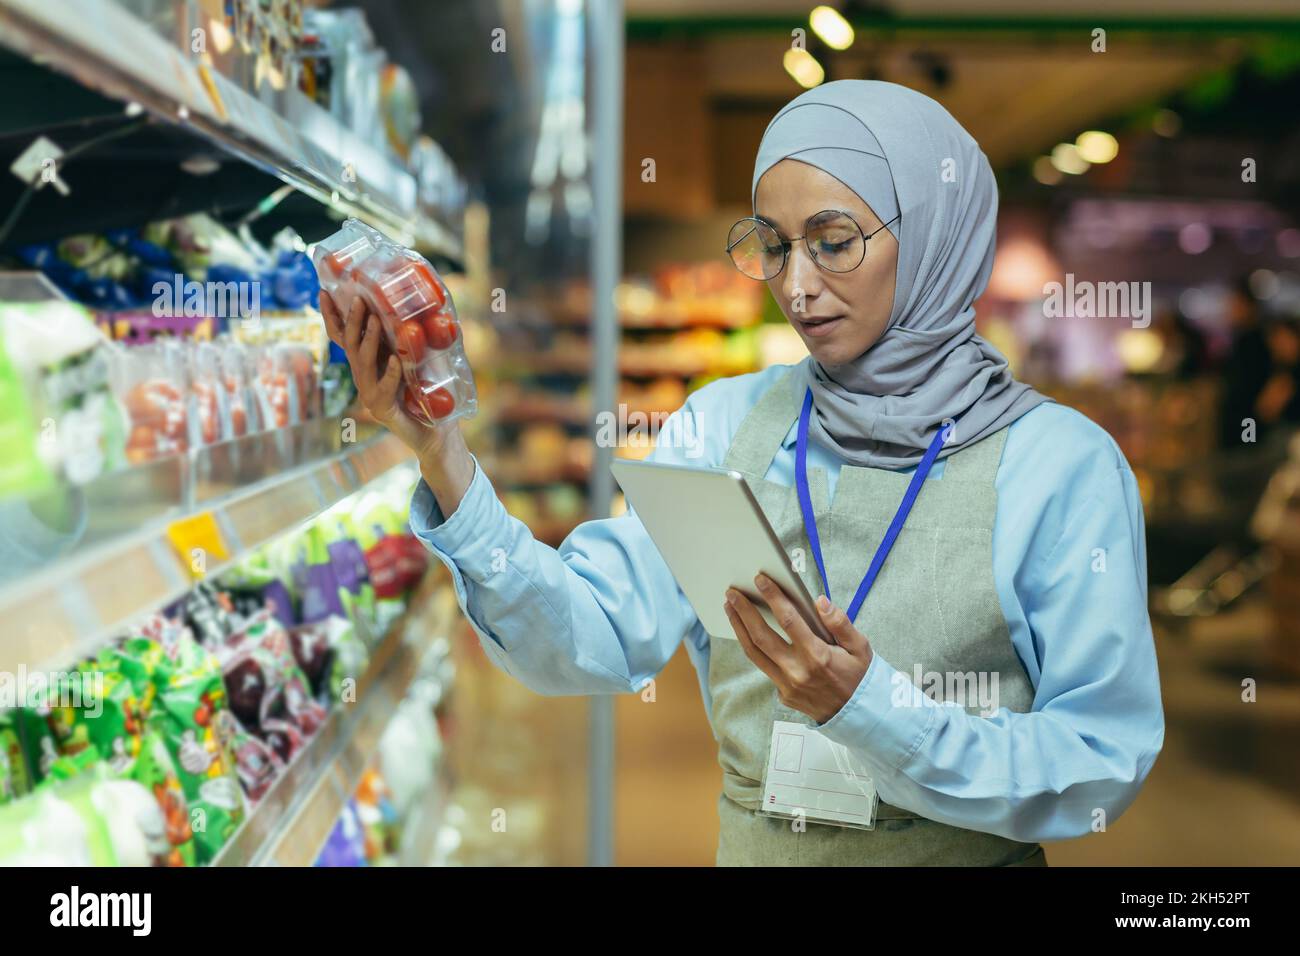 Une femme musulmane dans un hijab, un ouvrier de supermarché vérifie les produits sur les étagères et dans les réfrigérateurs, une femme avec une tablette et un tablier utilise une tablette pour examiner les produits. Banque D'Images